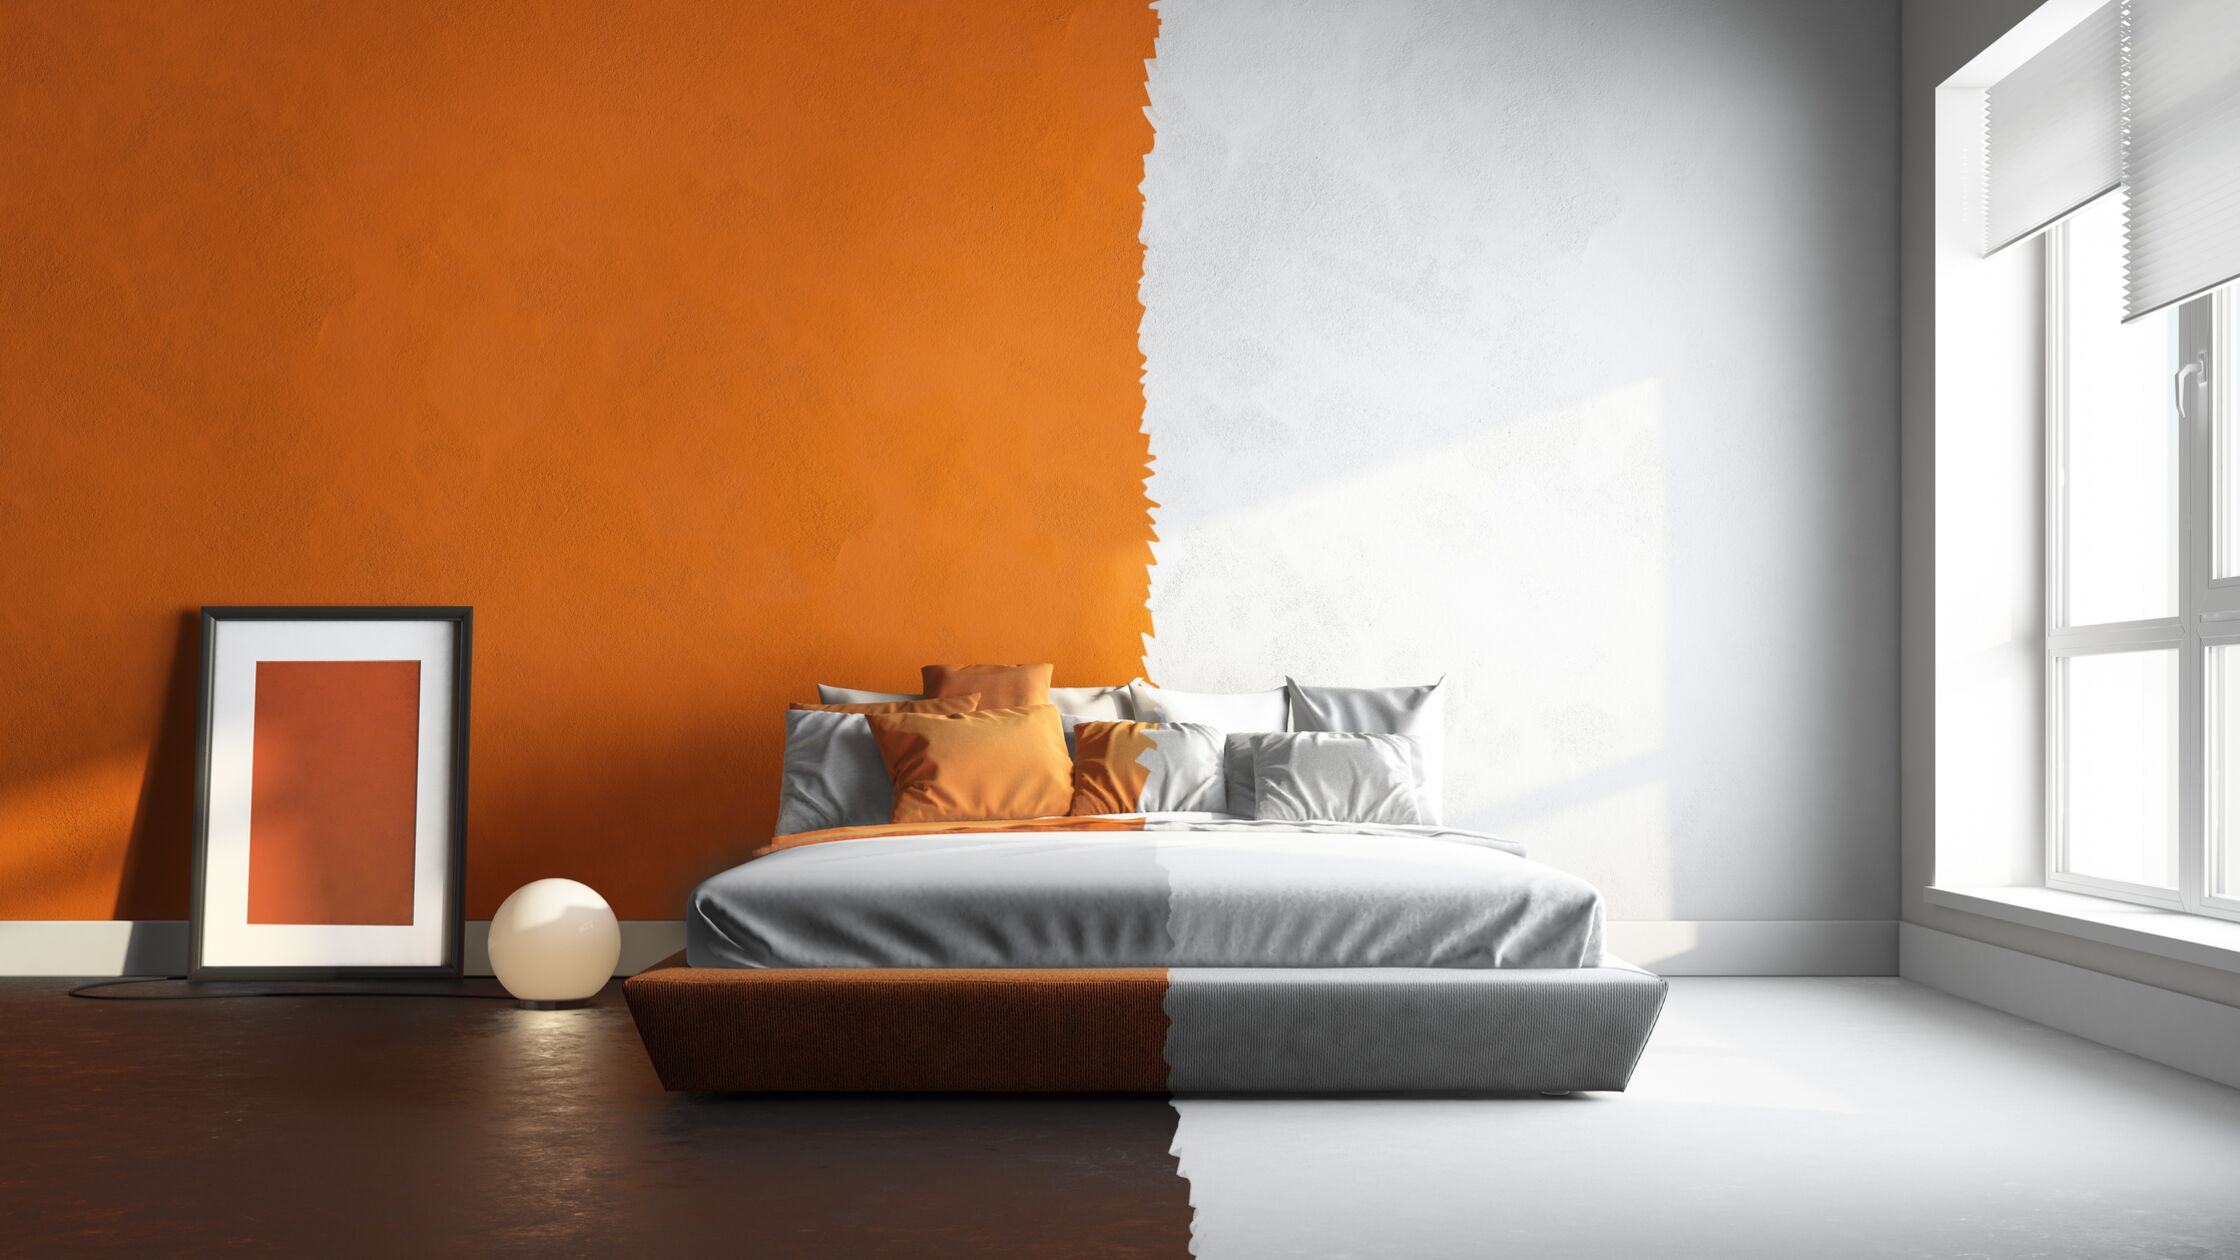 Raum in zwei Farben: Links in braun und orange, rechts in Grautönen.